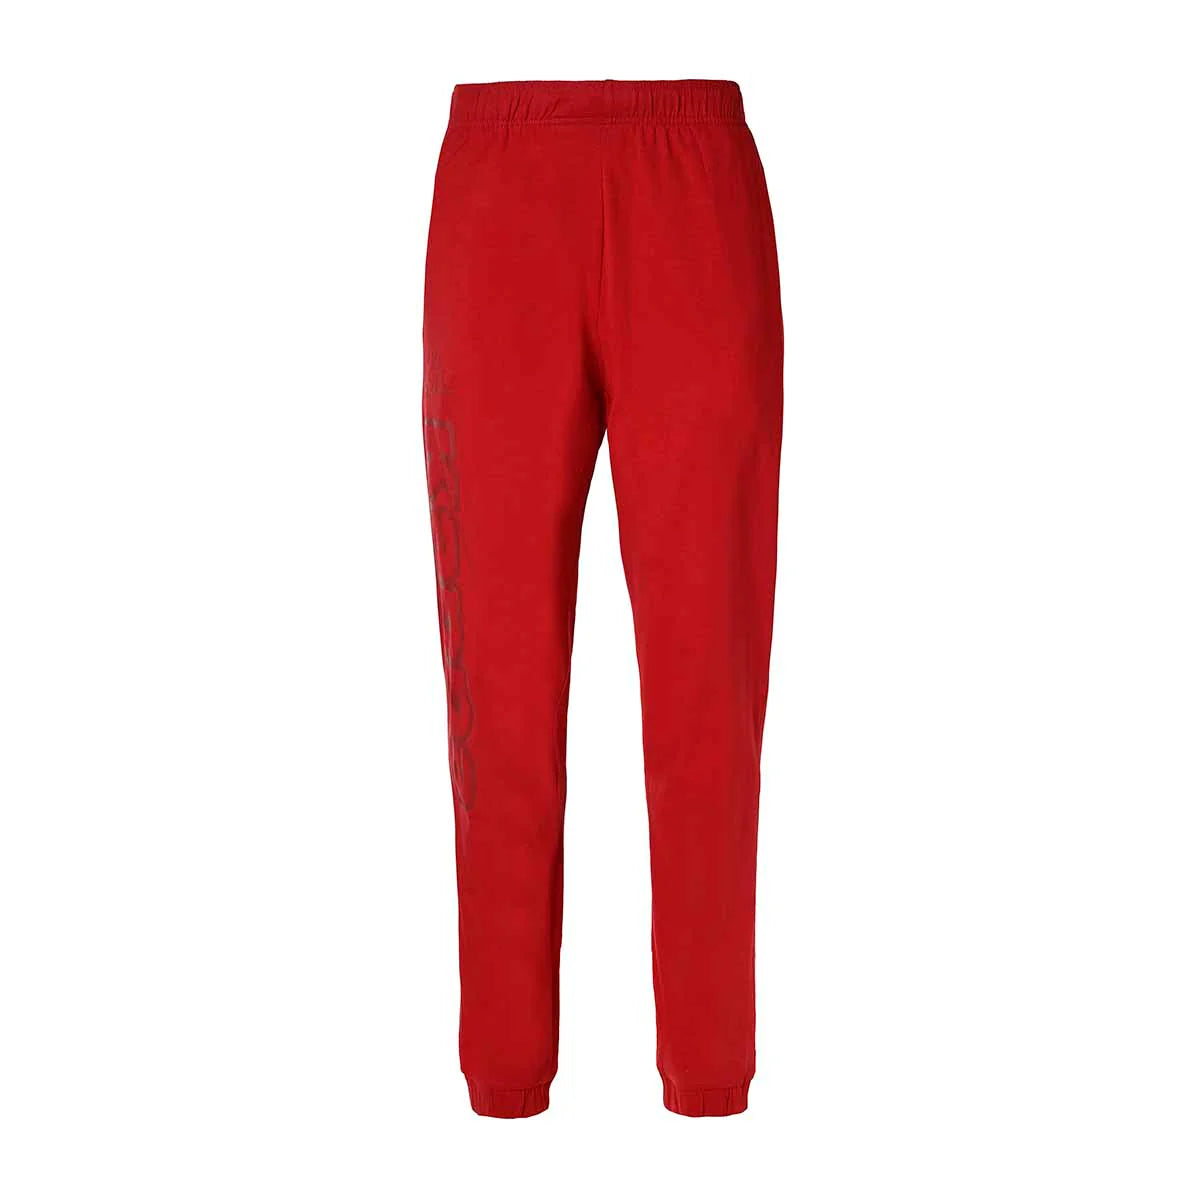 Pantalón Kappa Costi Pant - rojo - 